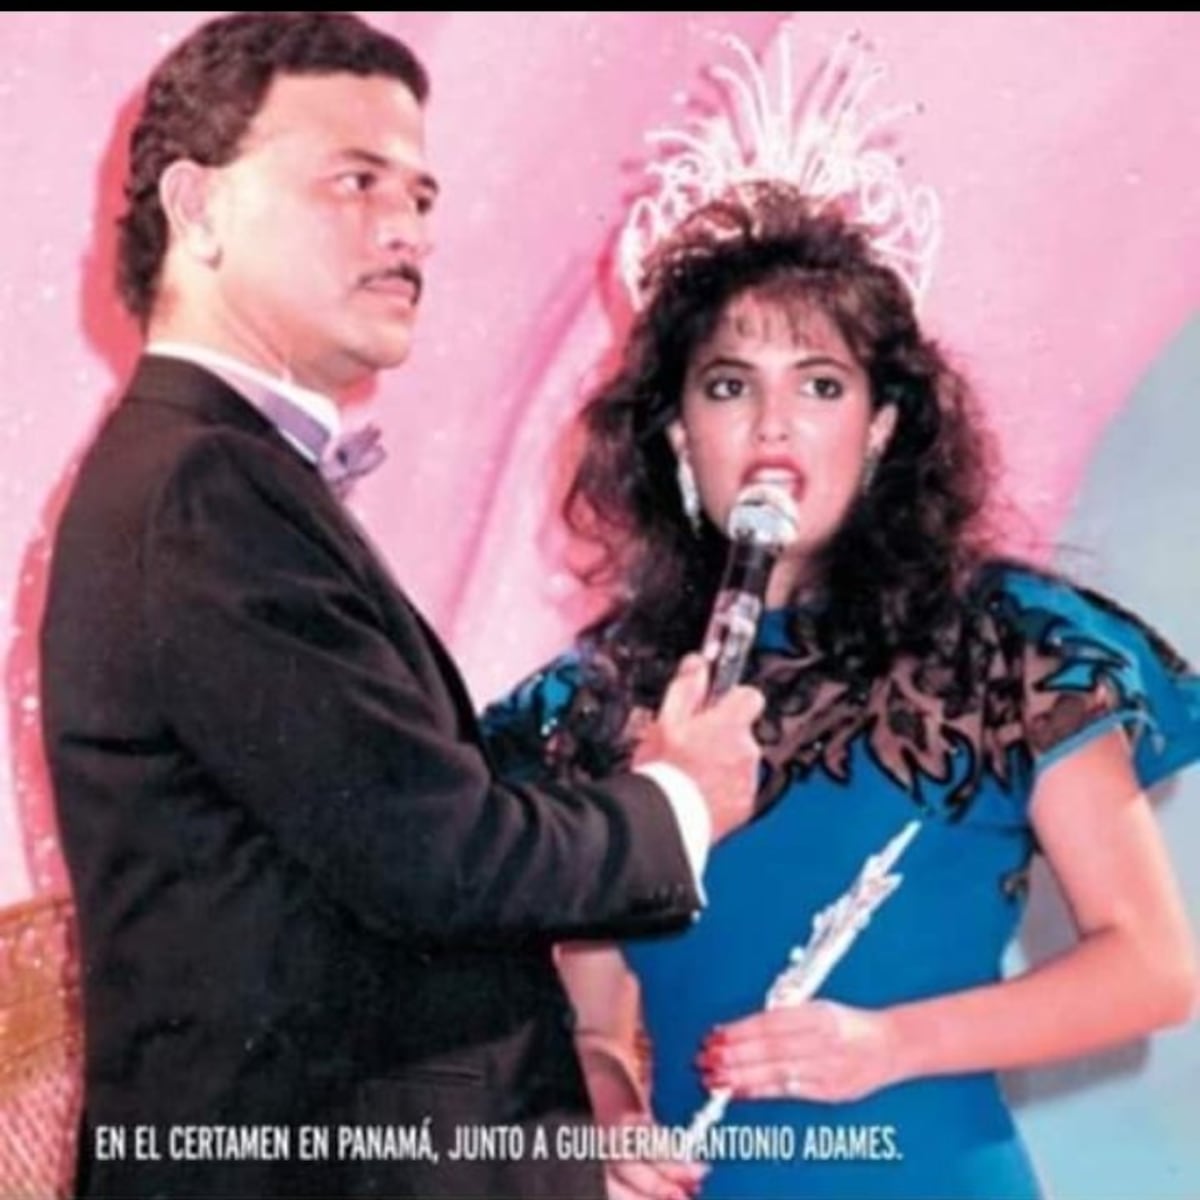 La boda del alcalde José Luis Fábrega con Miss Mundo Panamá 1986, María Lorena Orillac